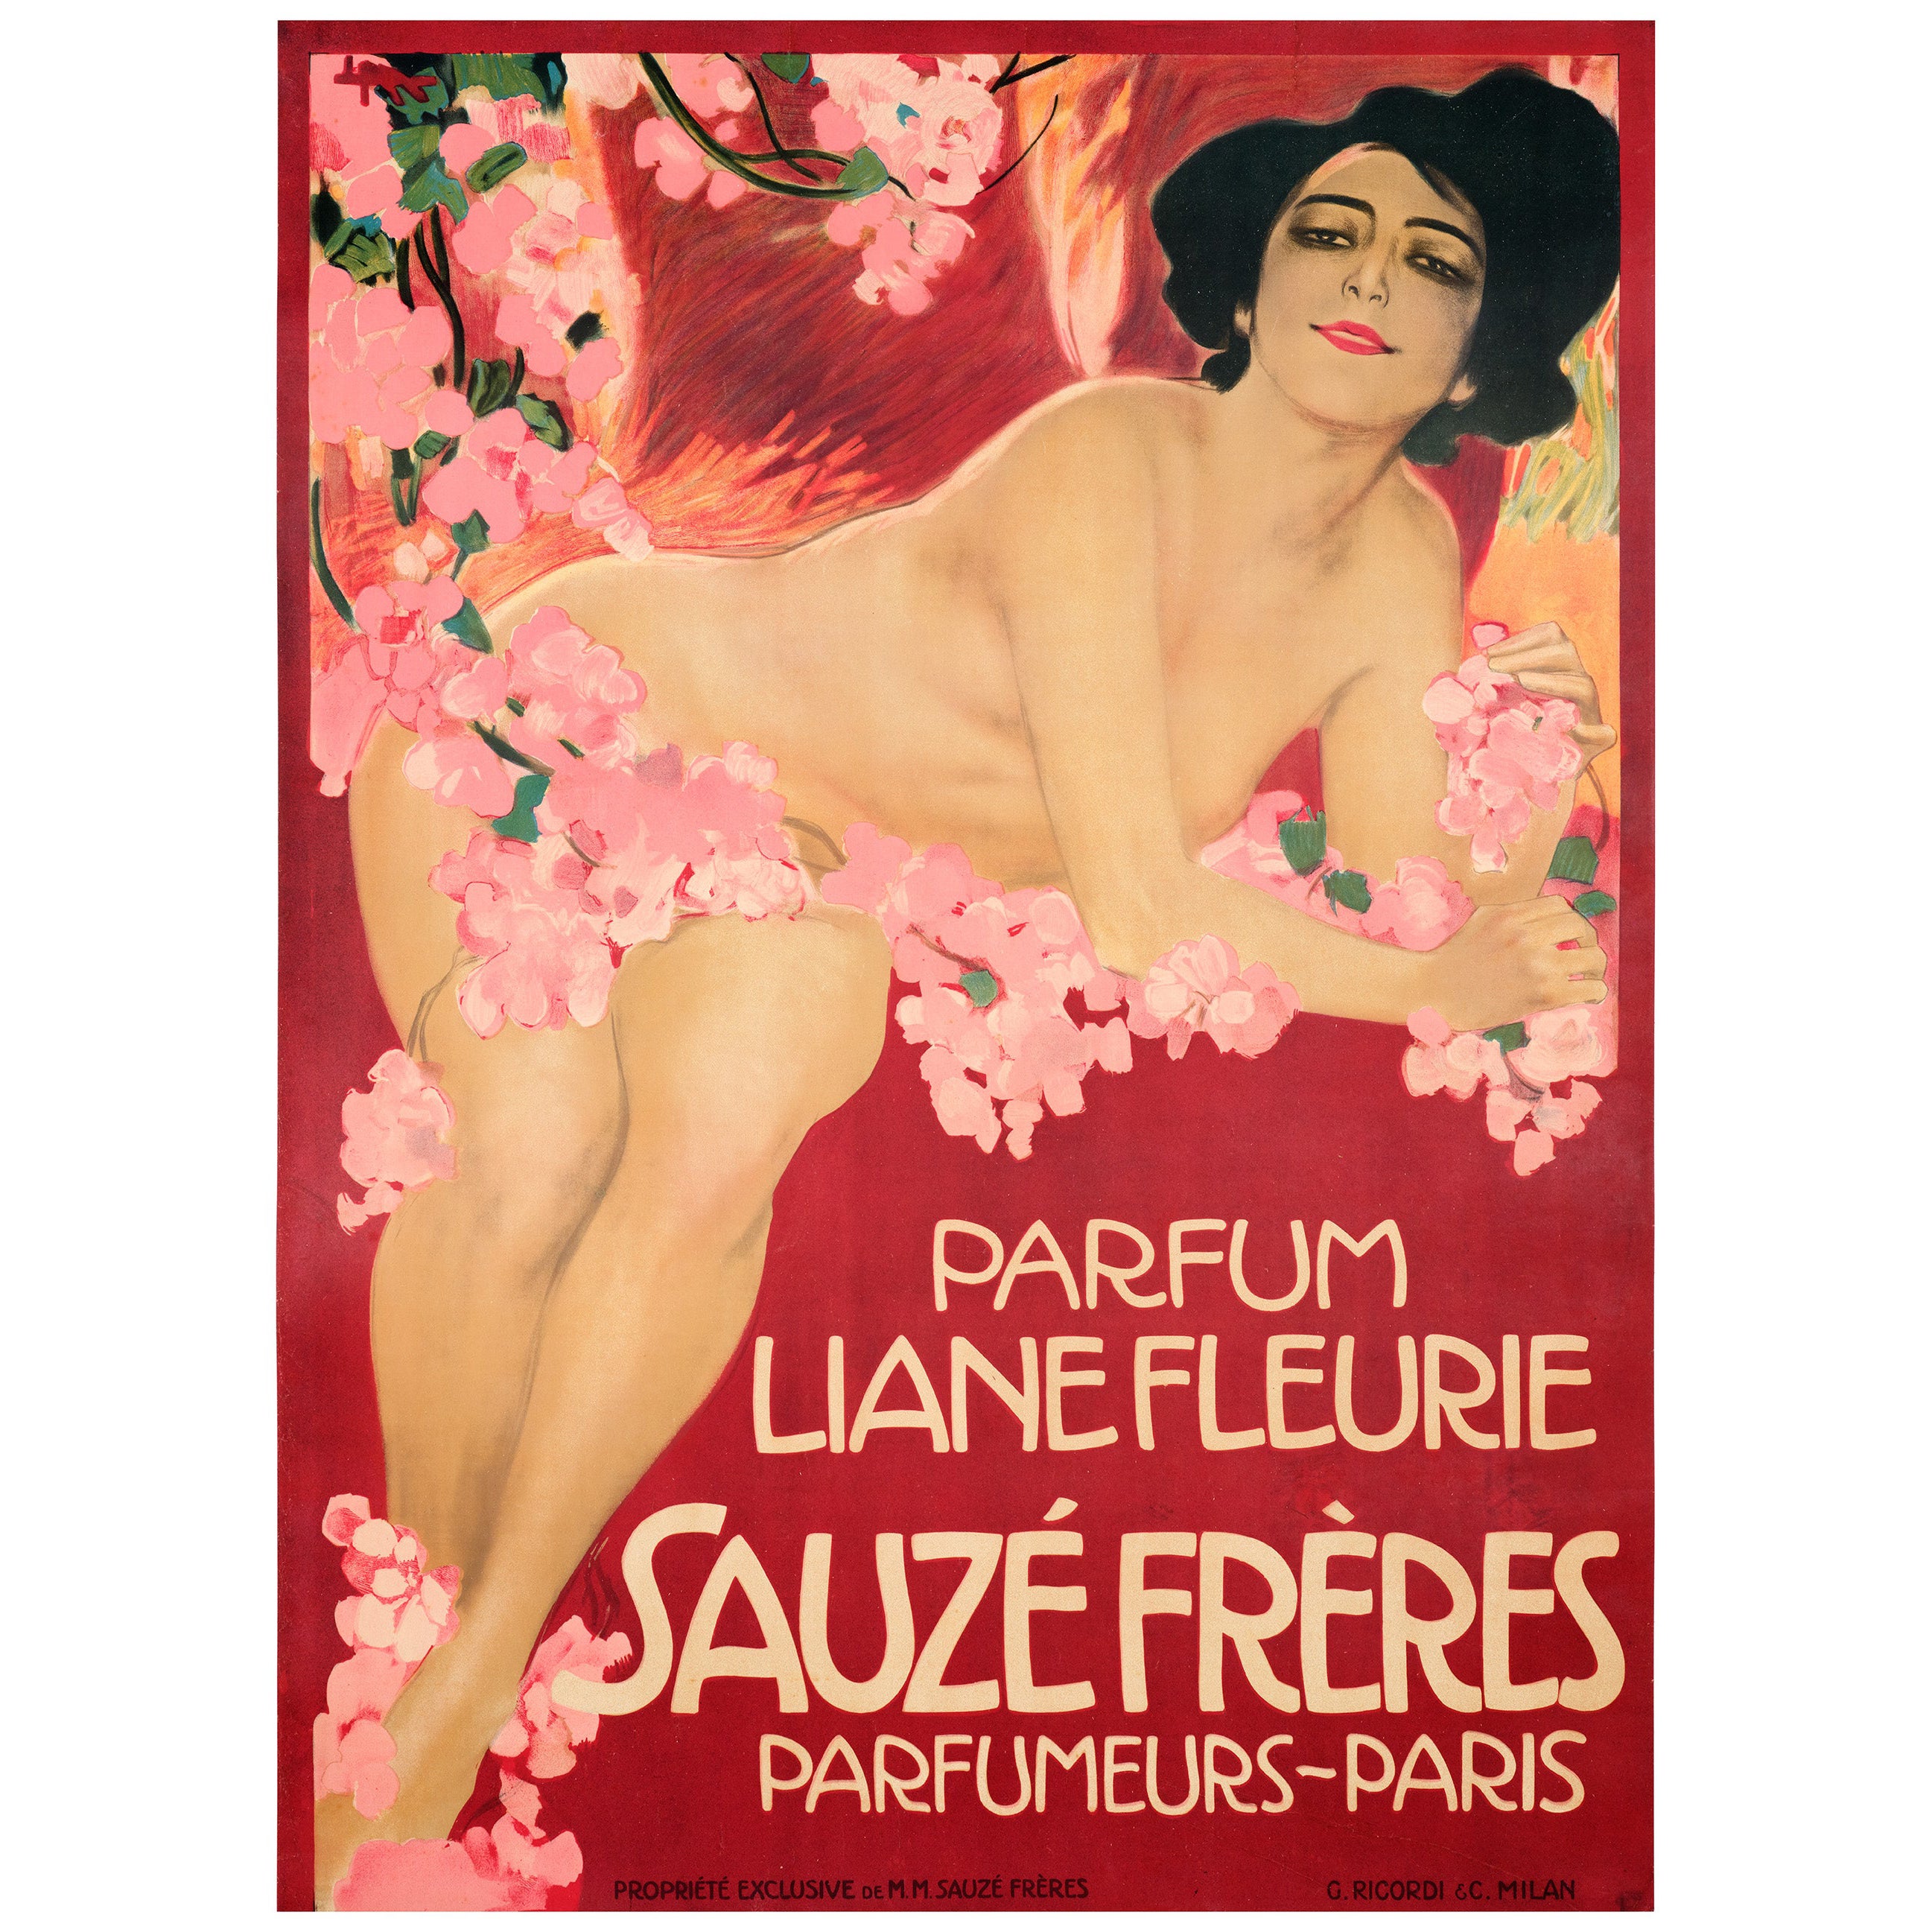 Metlicovitz, Original Art Nouveau Poster, Liane Fleurie Sauze Perfume Paris 1910 For Sale